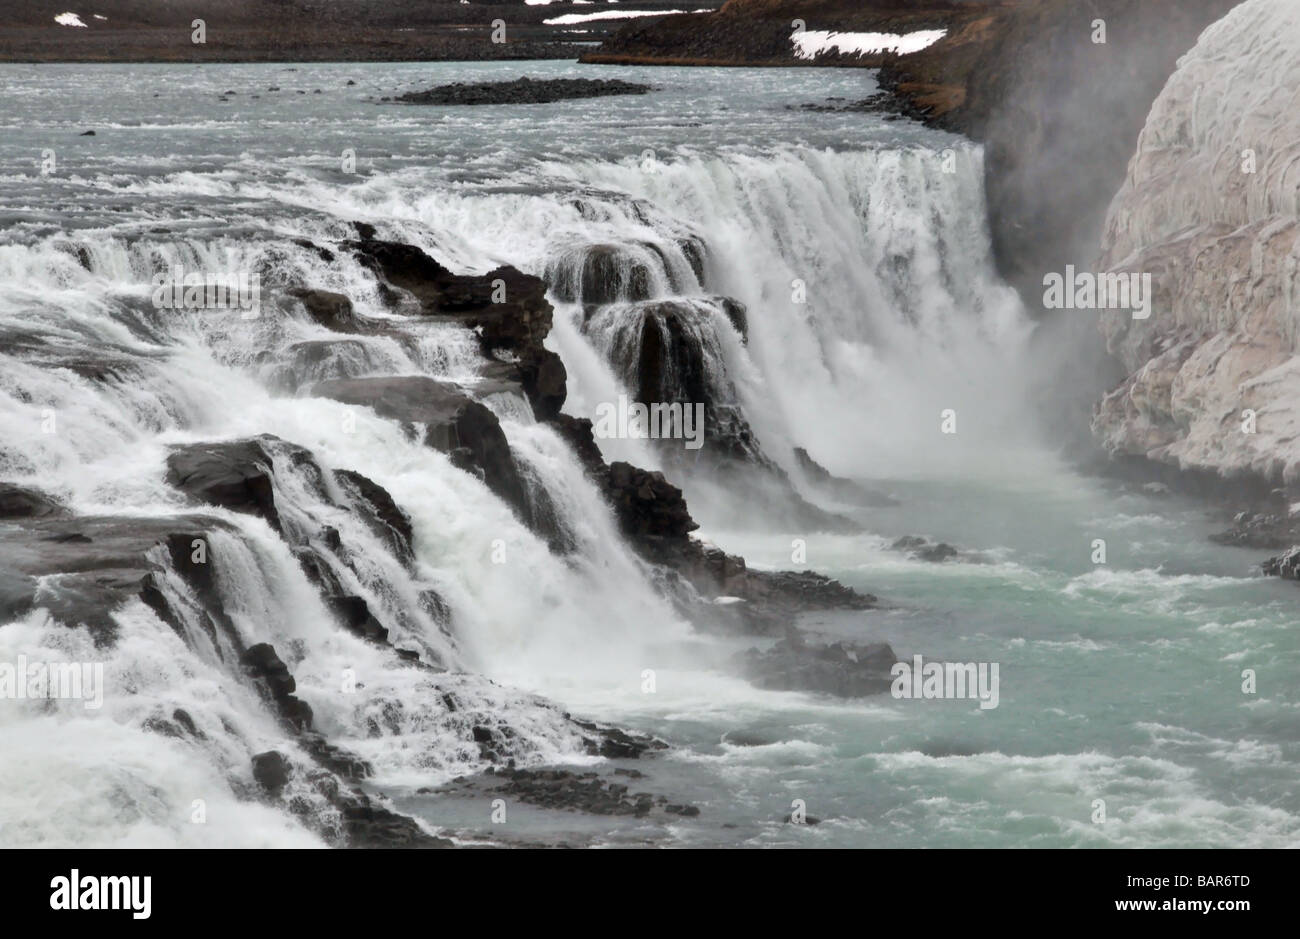 Der Gullfoss Wasserfall, South West Island: ein Zoom Aufnahme der ersten, Schritt 11m hoch in den Lauf des Flusses Hvita Stockfoto